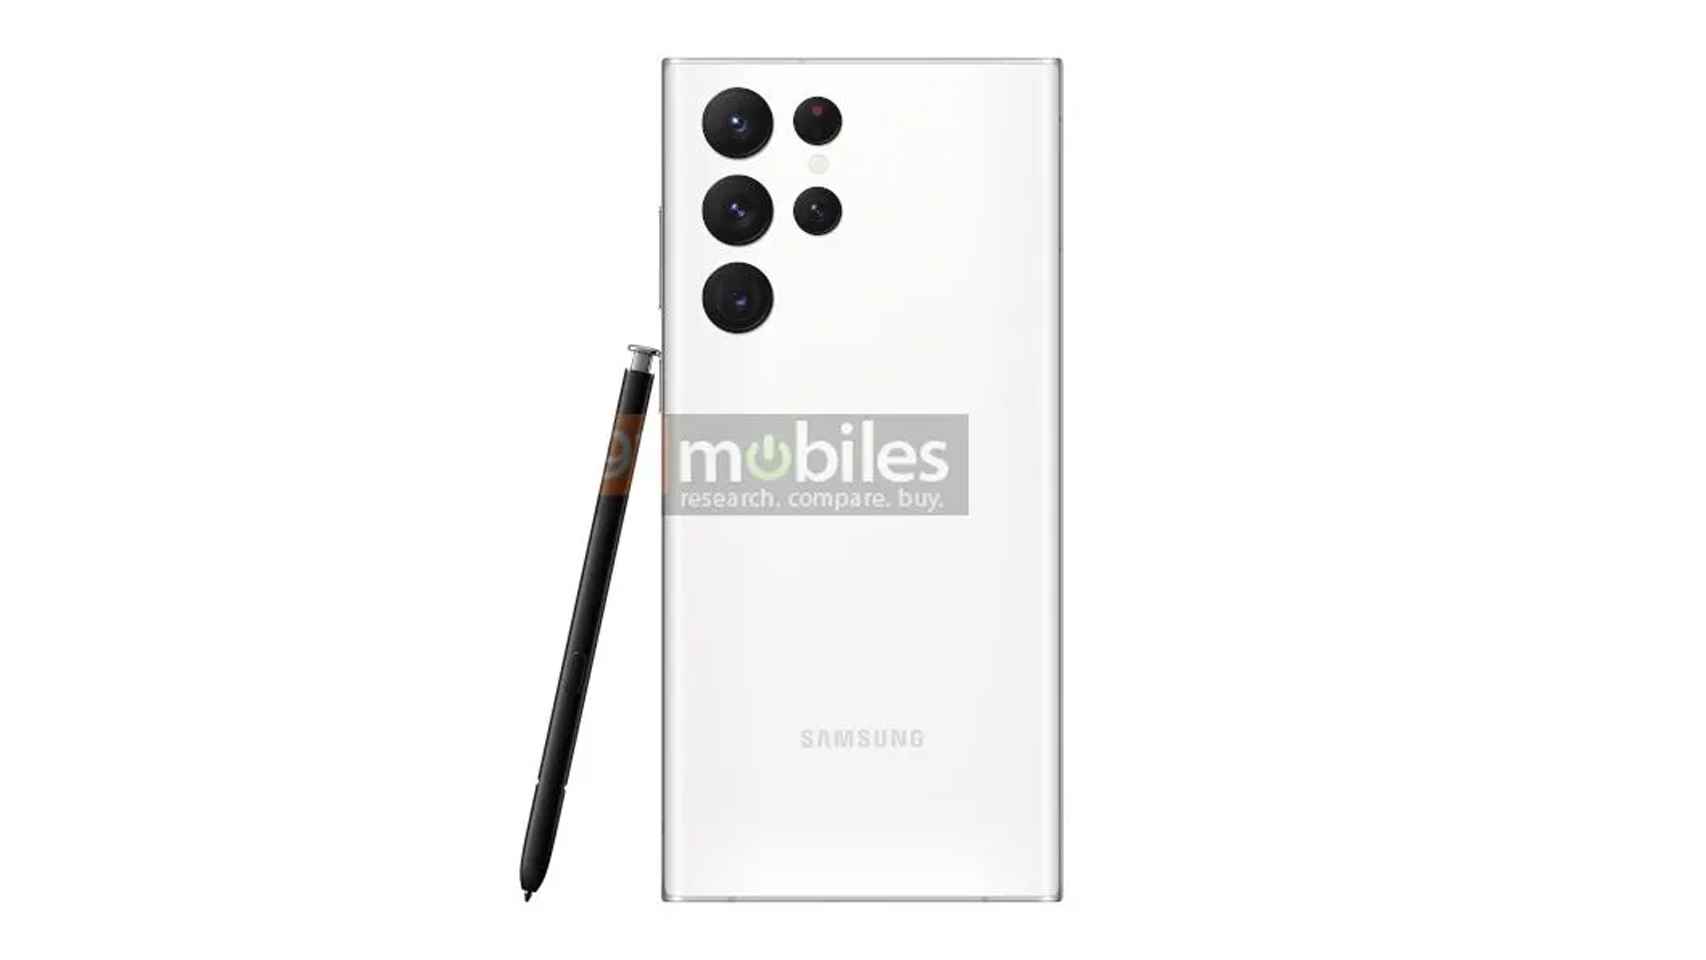 Imágenes oficiales del Samsung Galaxy S22 Ultra: di hola al S-Pen